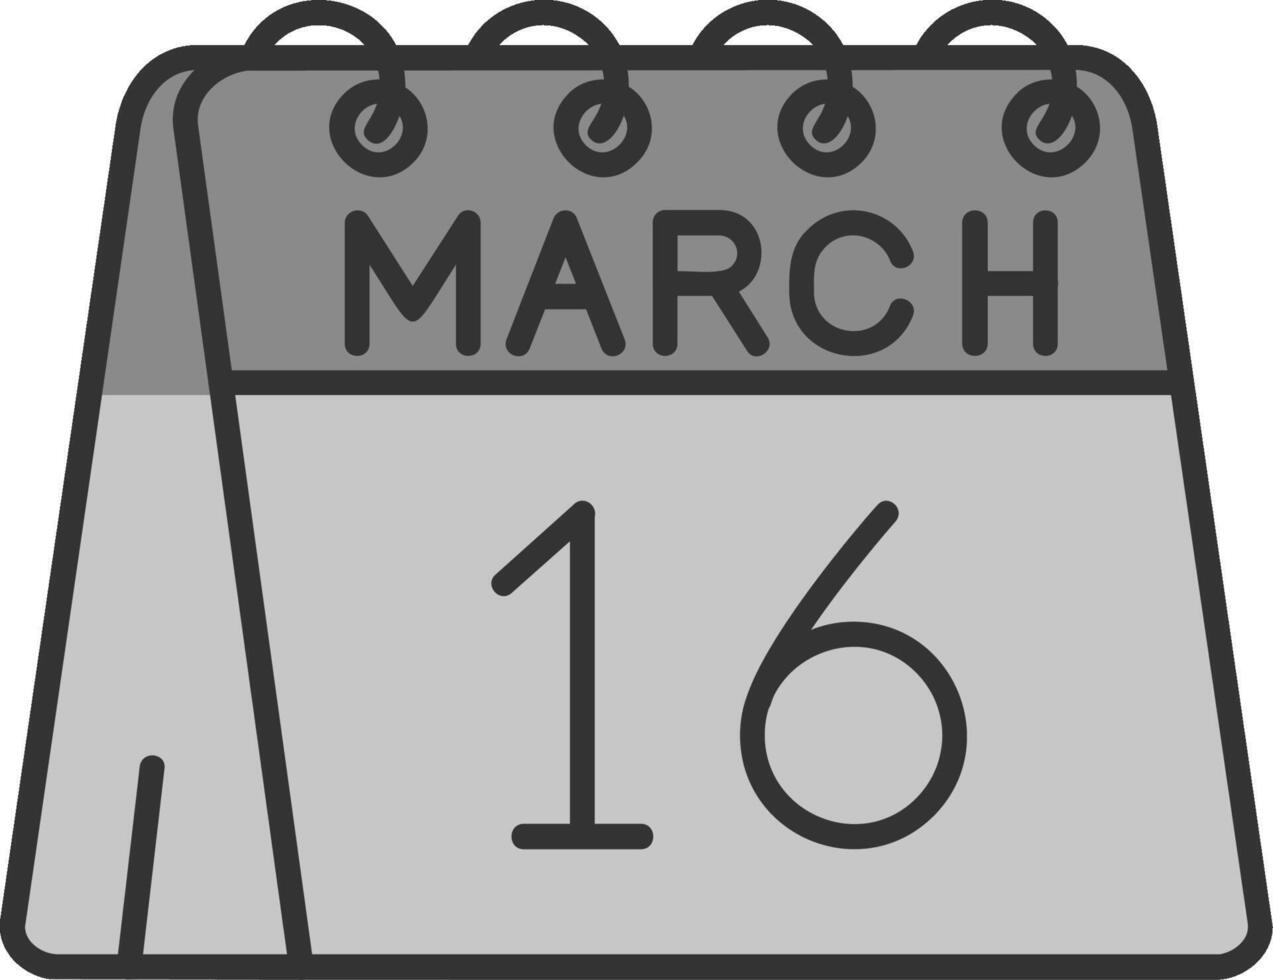 16 ° di marzo linea pieno in scala di grigi icona vettore